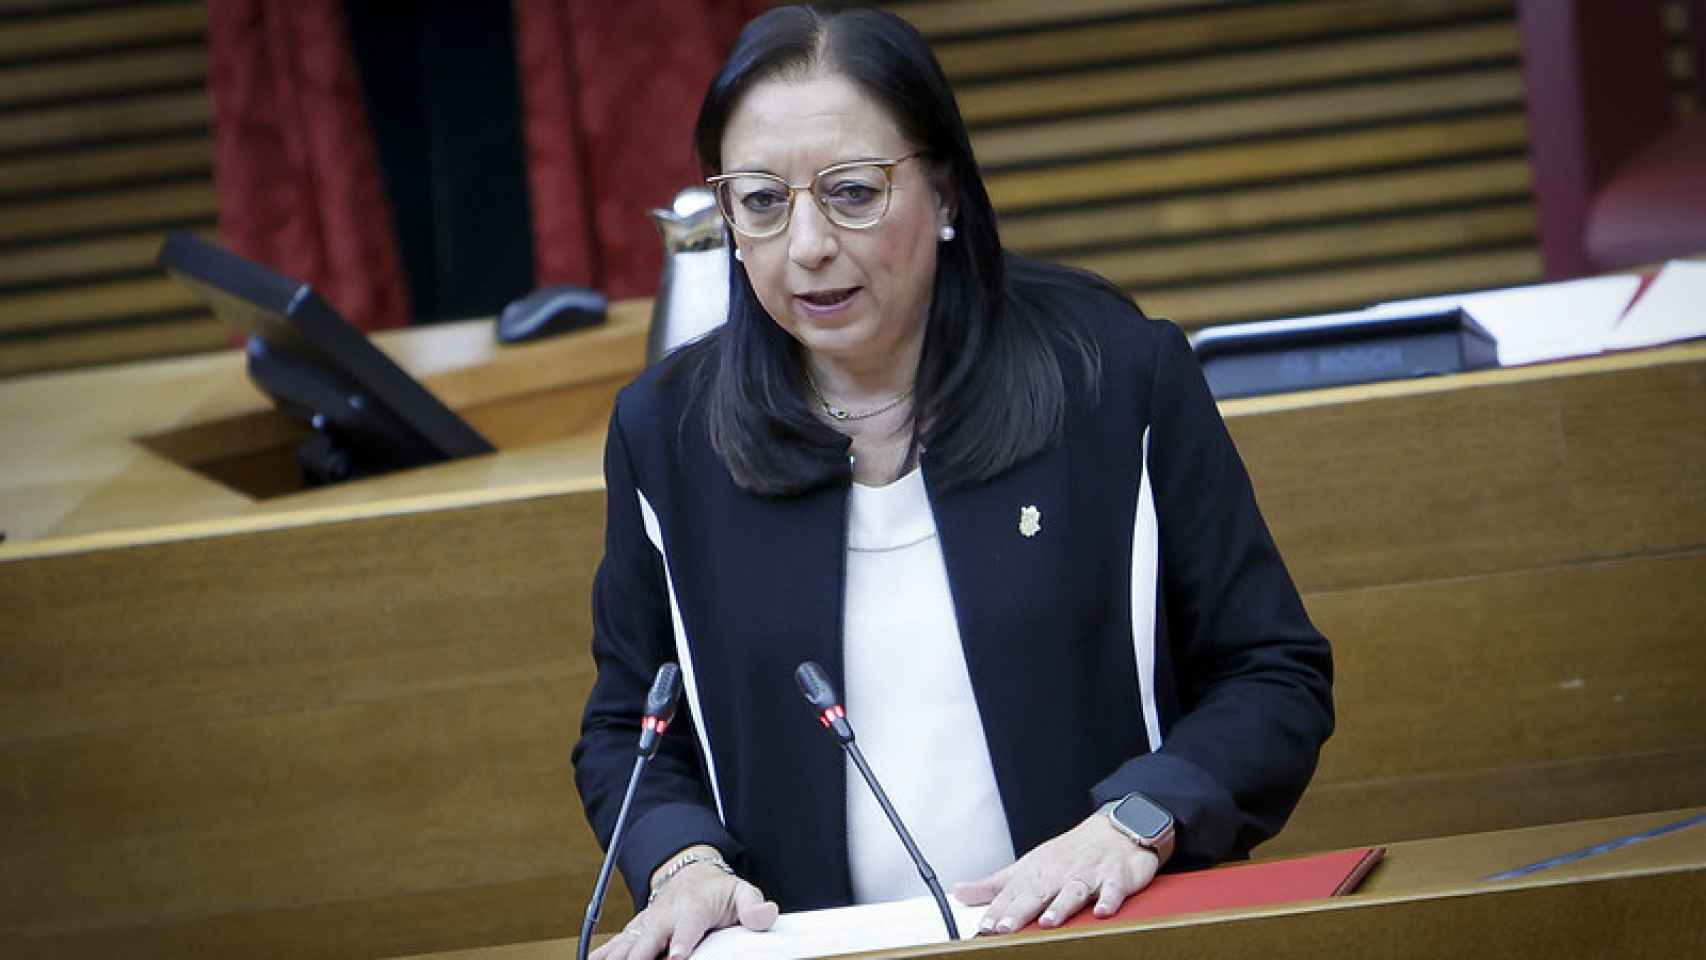 La presidenta de las Cortes Valencianas, Llanos Massó, este jueves